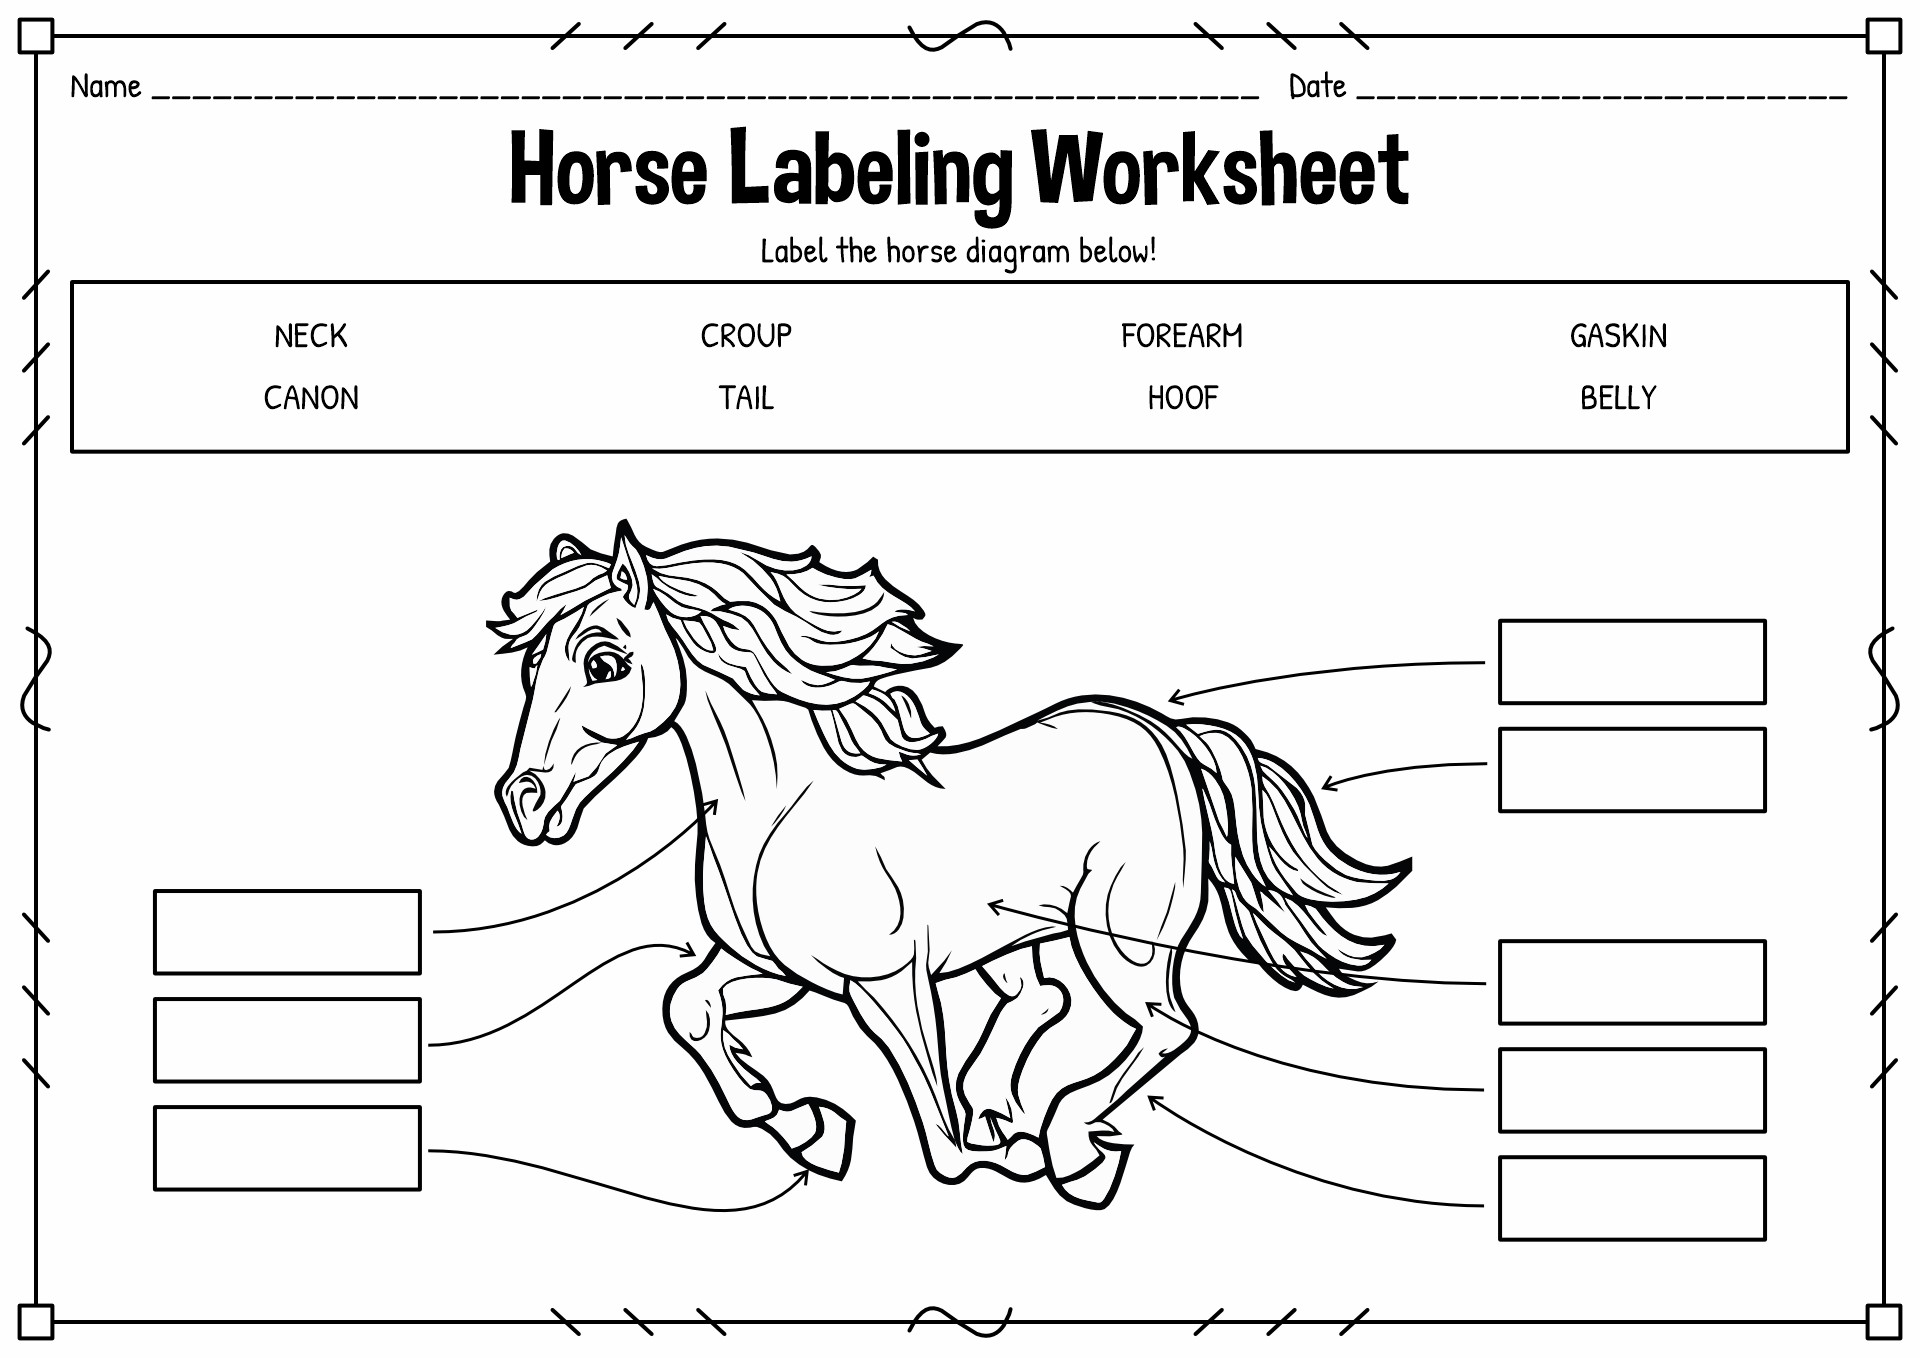 Horse Labeling Worksheet